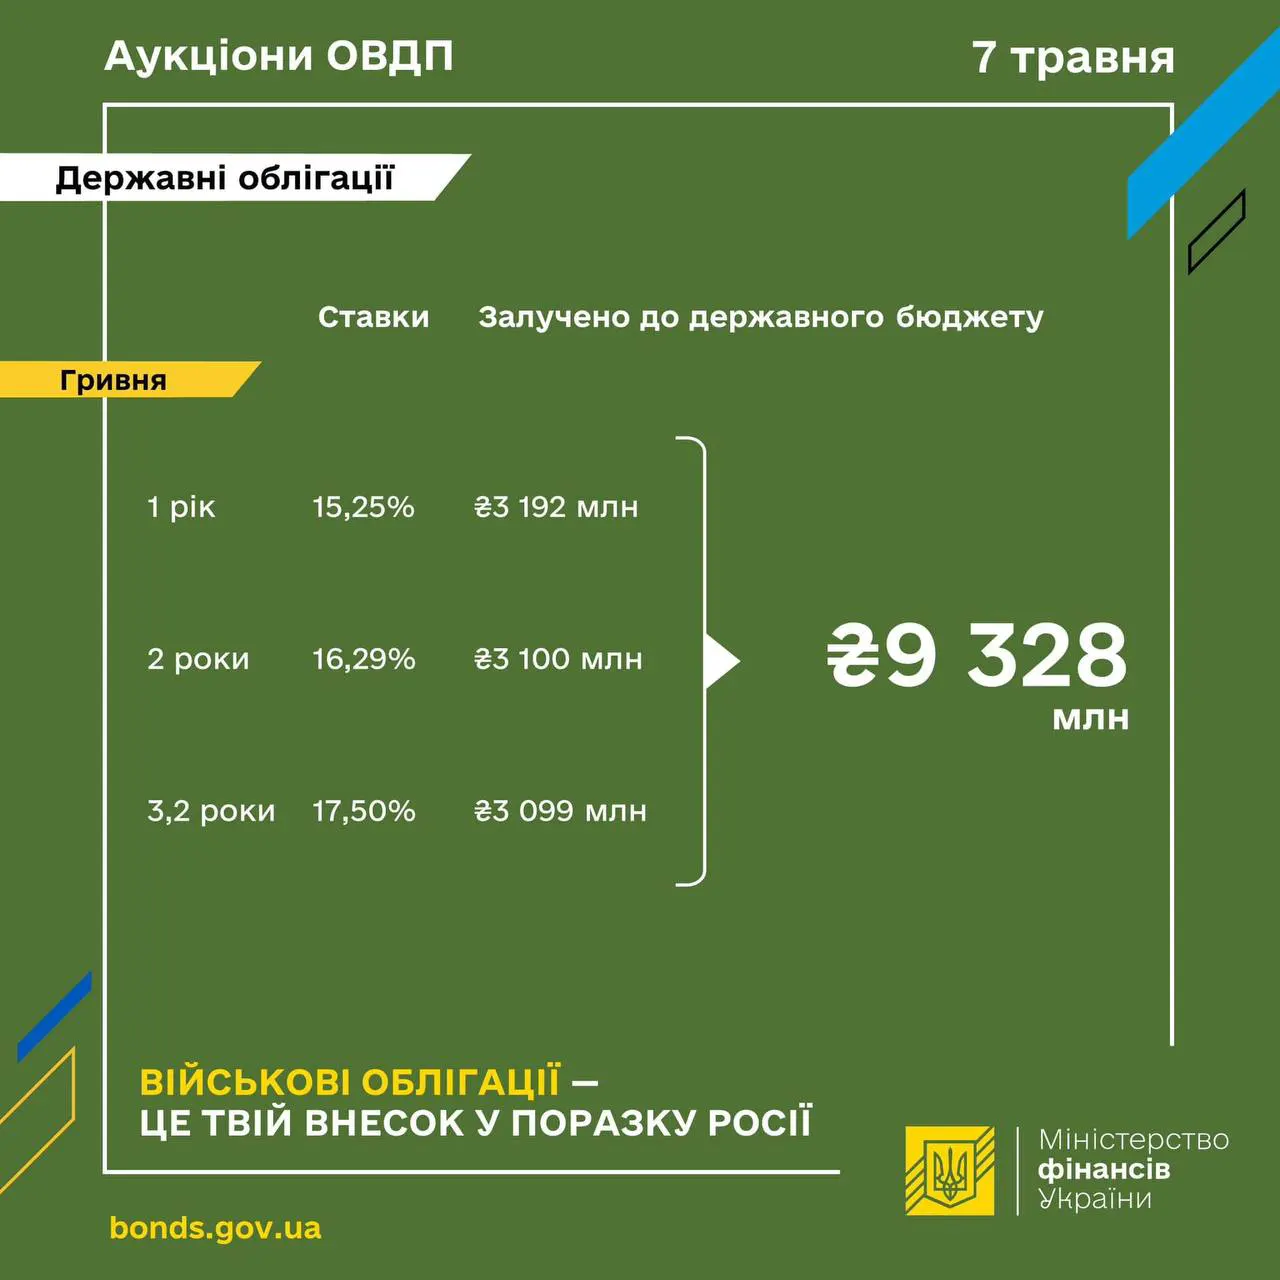 Топ-5 любимых ОВГЗ украинцев этой весной: какие бумаги чаще всего покупают